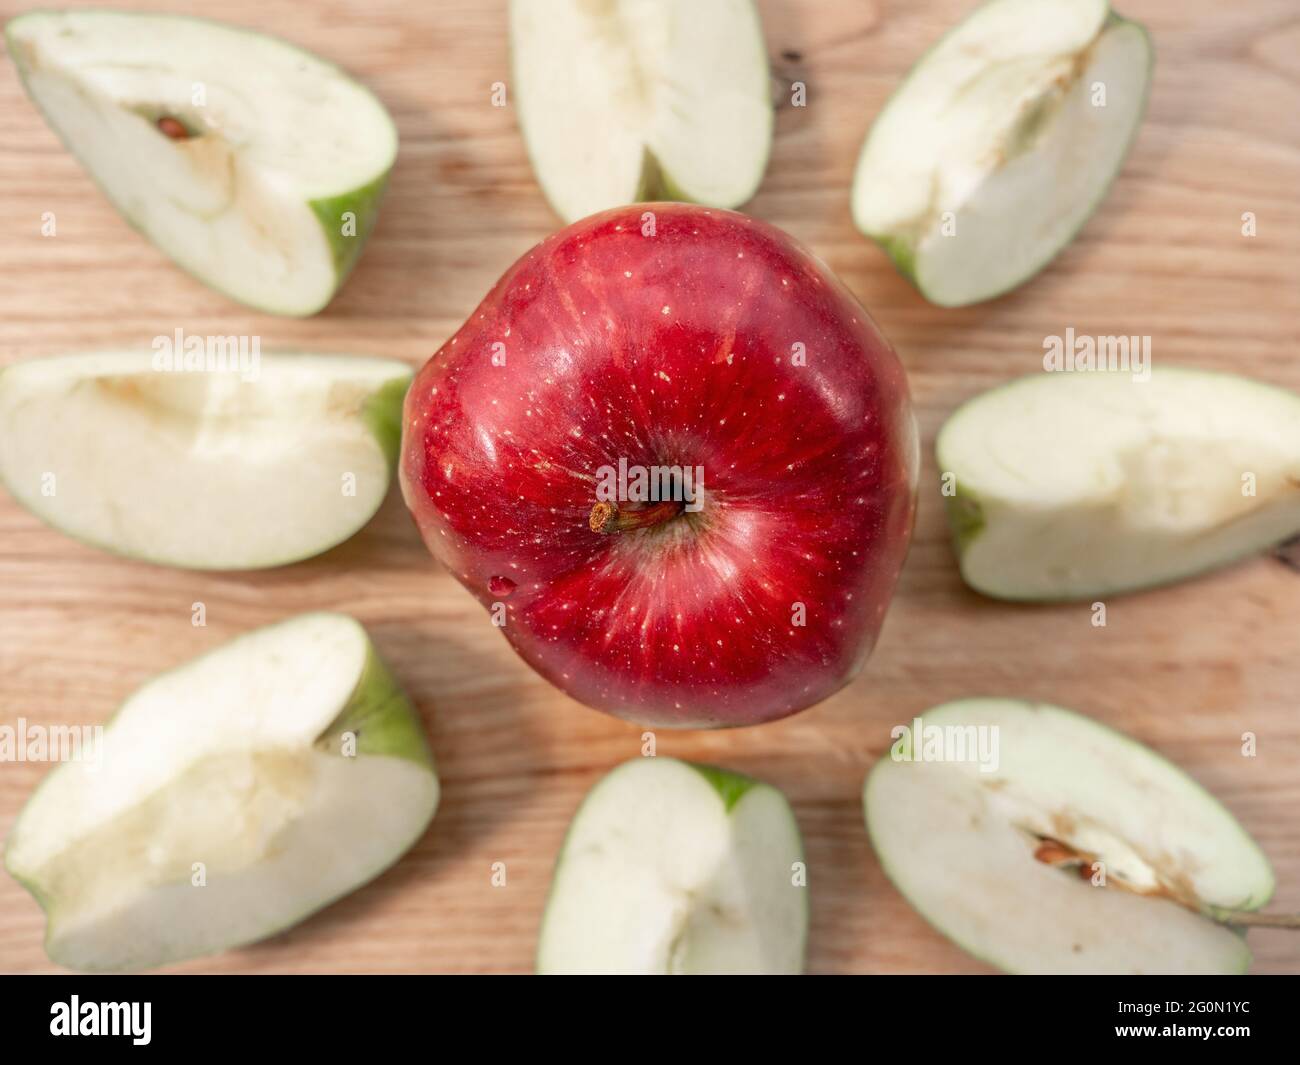 Pomme rouge juteuse fraîche au centre d'une planche à découper en bois clair. Huit quarts de pomme verte forment un cercle autour de la pomme rouge. Concept de saine alimentation Banque D'Images